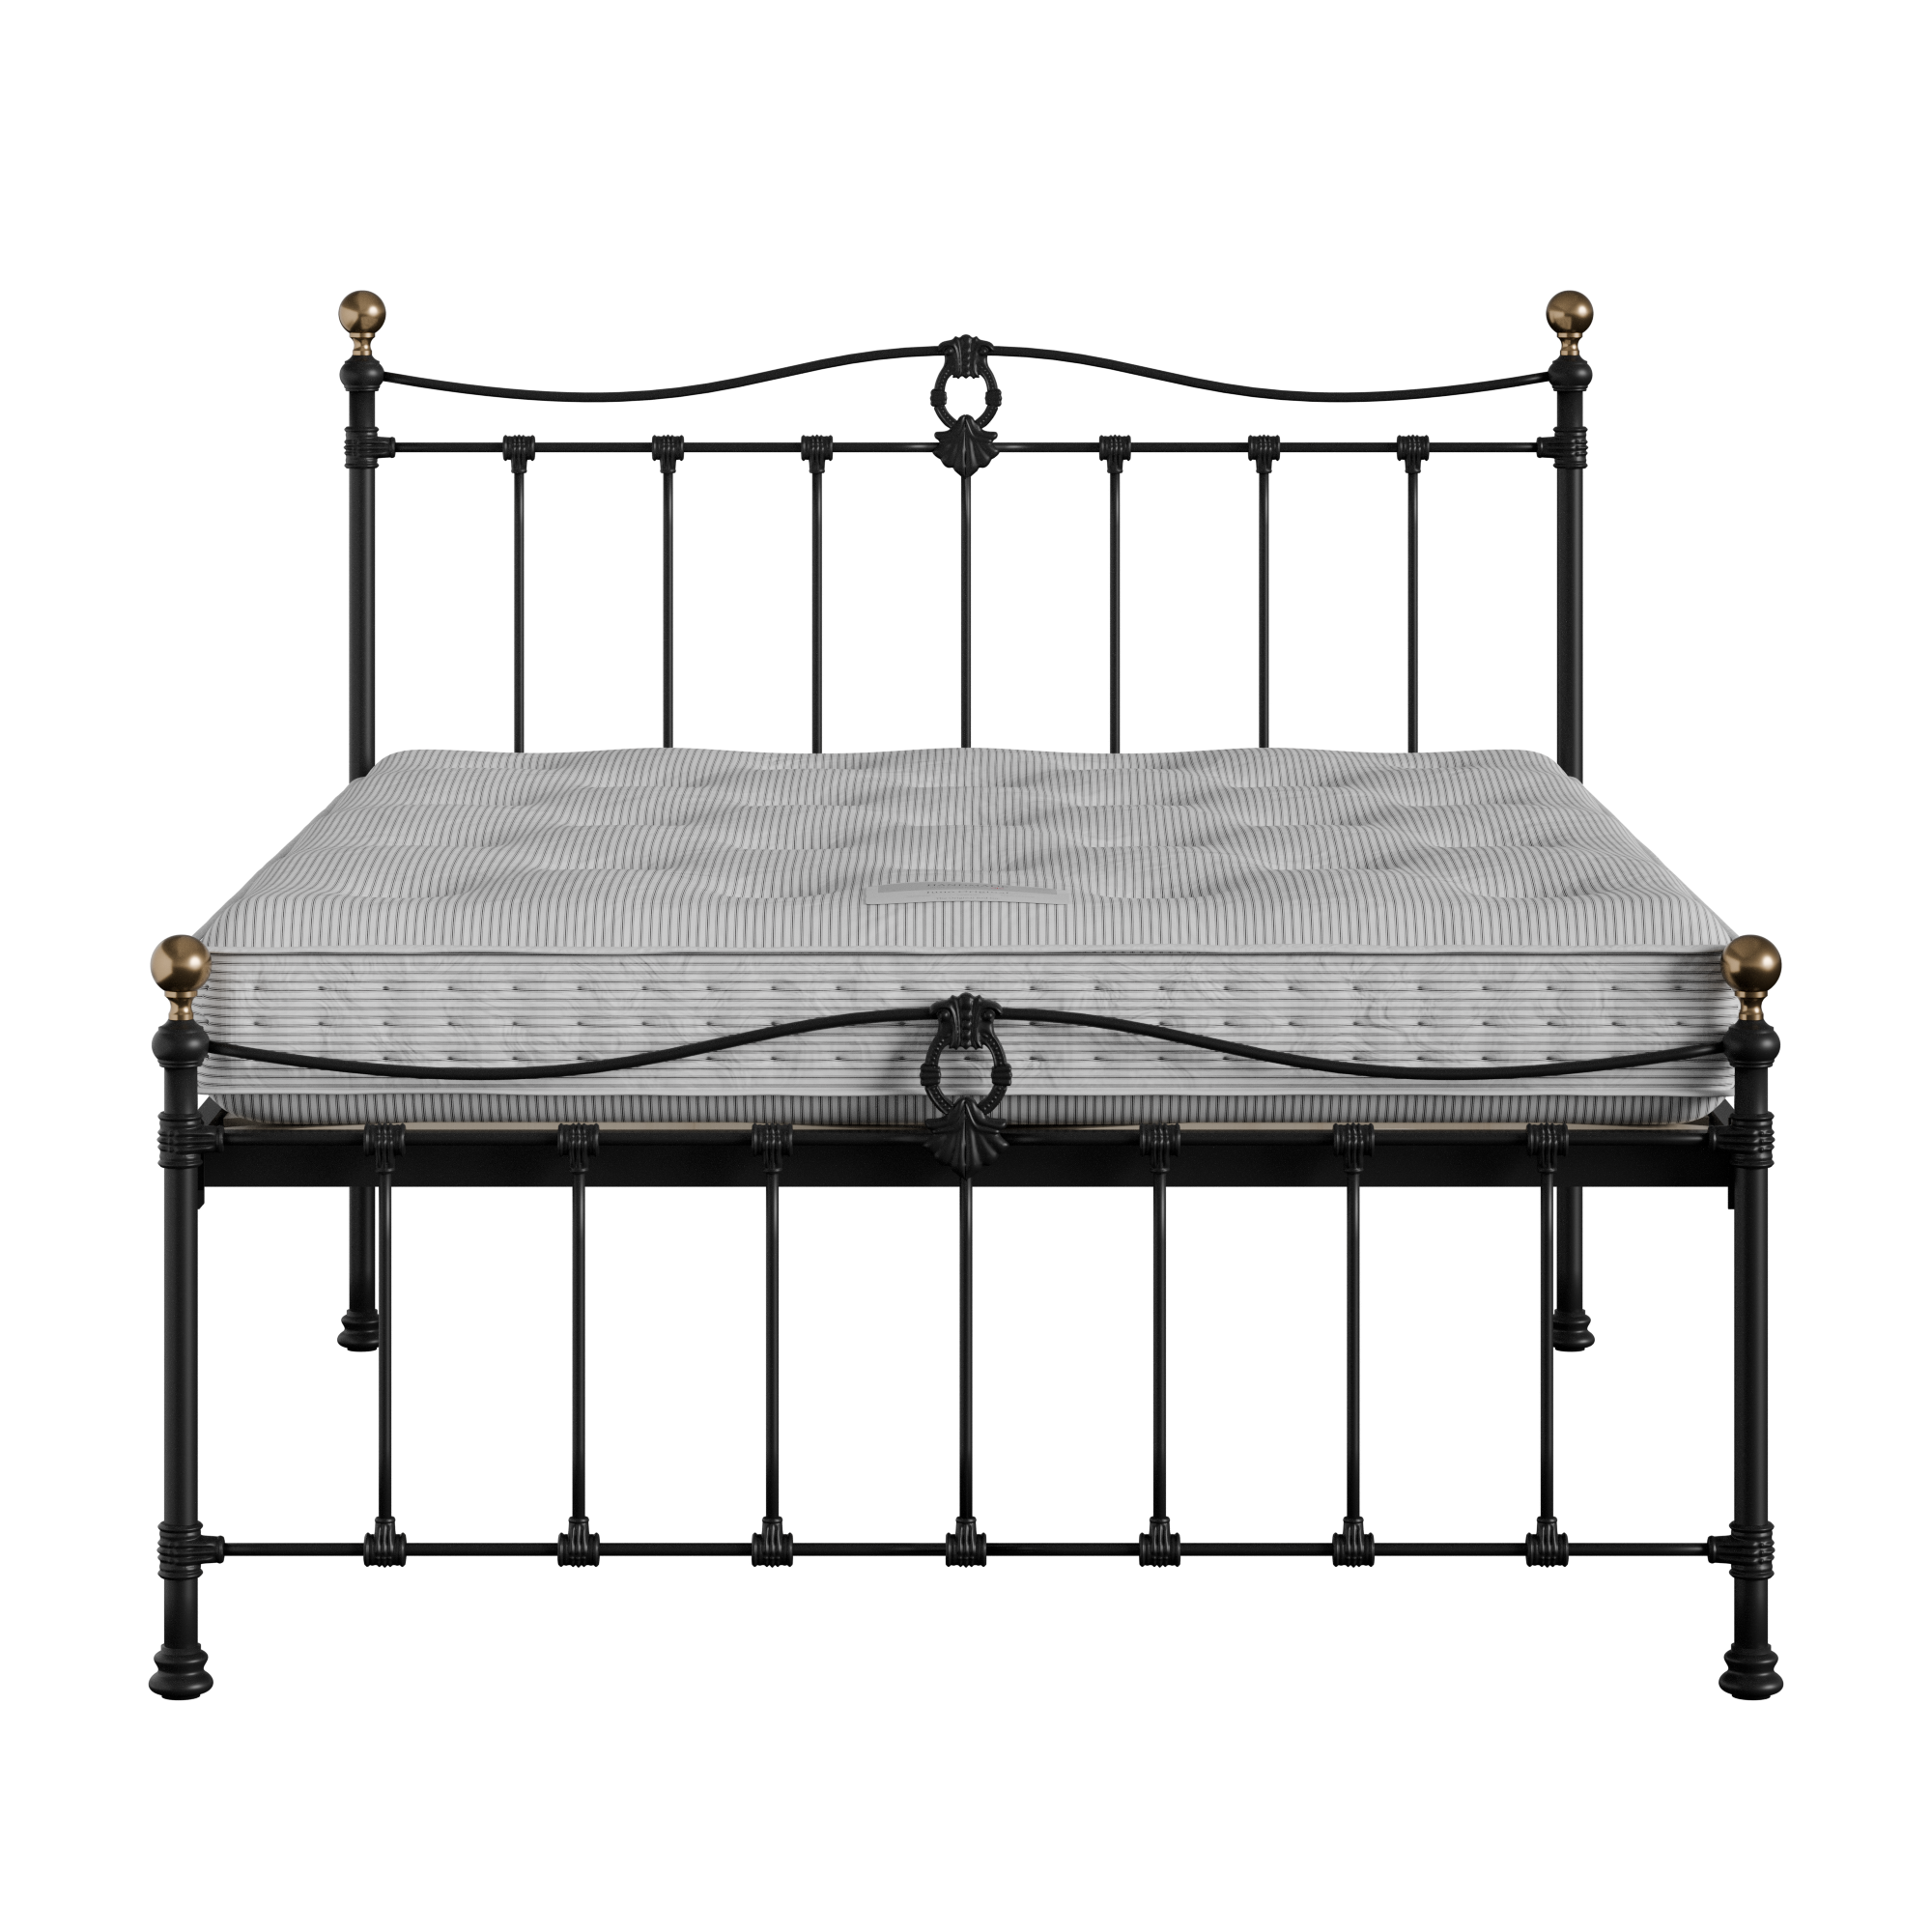 Tulsk Low Footend cama de metal en negro con colchón